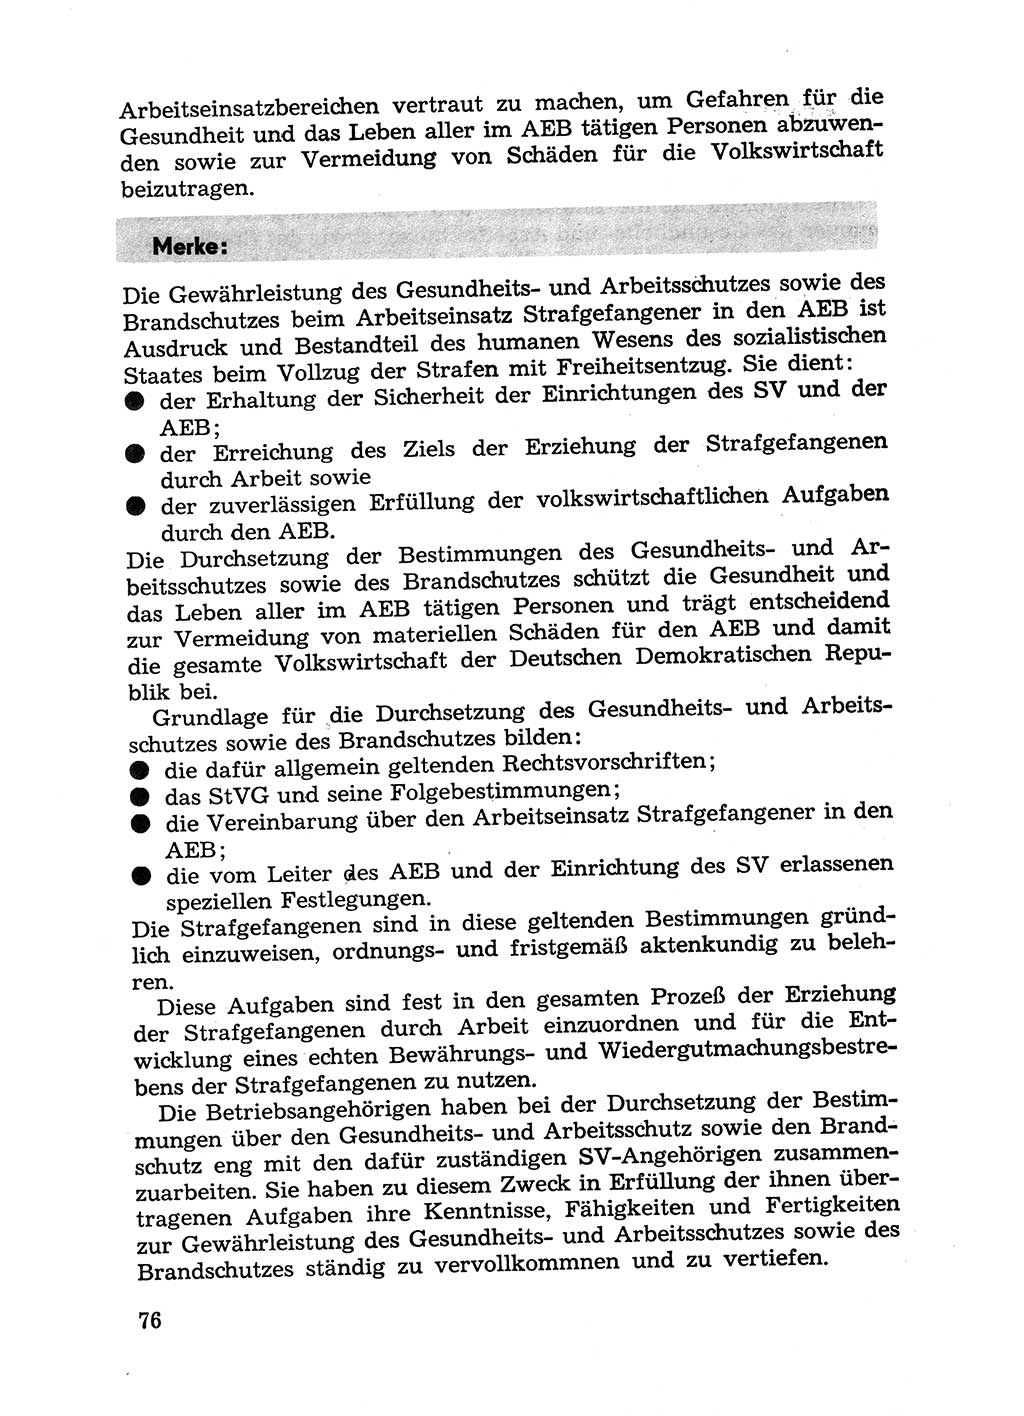 Handbuch für Betriebsangehörige, Abteilung Strafvollzug (SV) [Ministerium des Innern (MdI) Deutsche Demokratische Republik (DDR)] 1981, Seite 76 (Hb. BA Abt. SV MdI DDR 1981, S. 76)